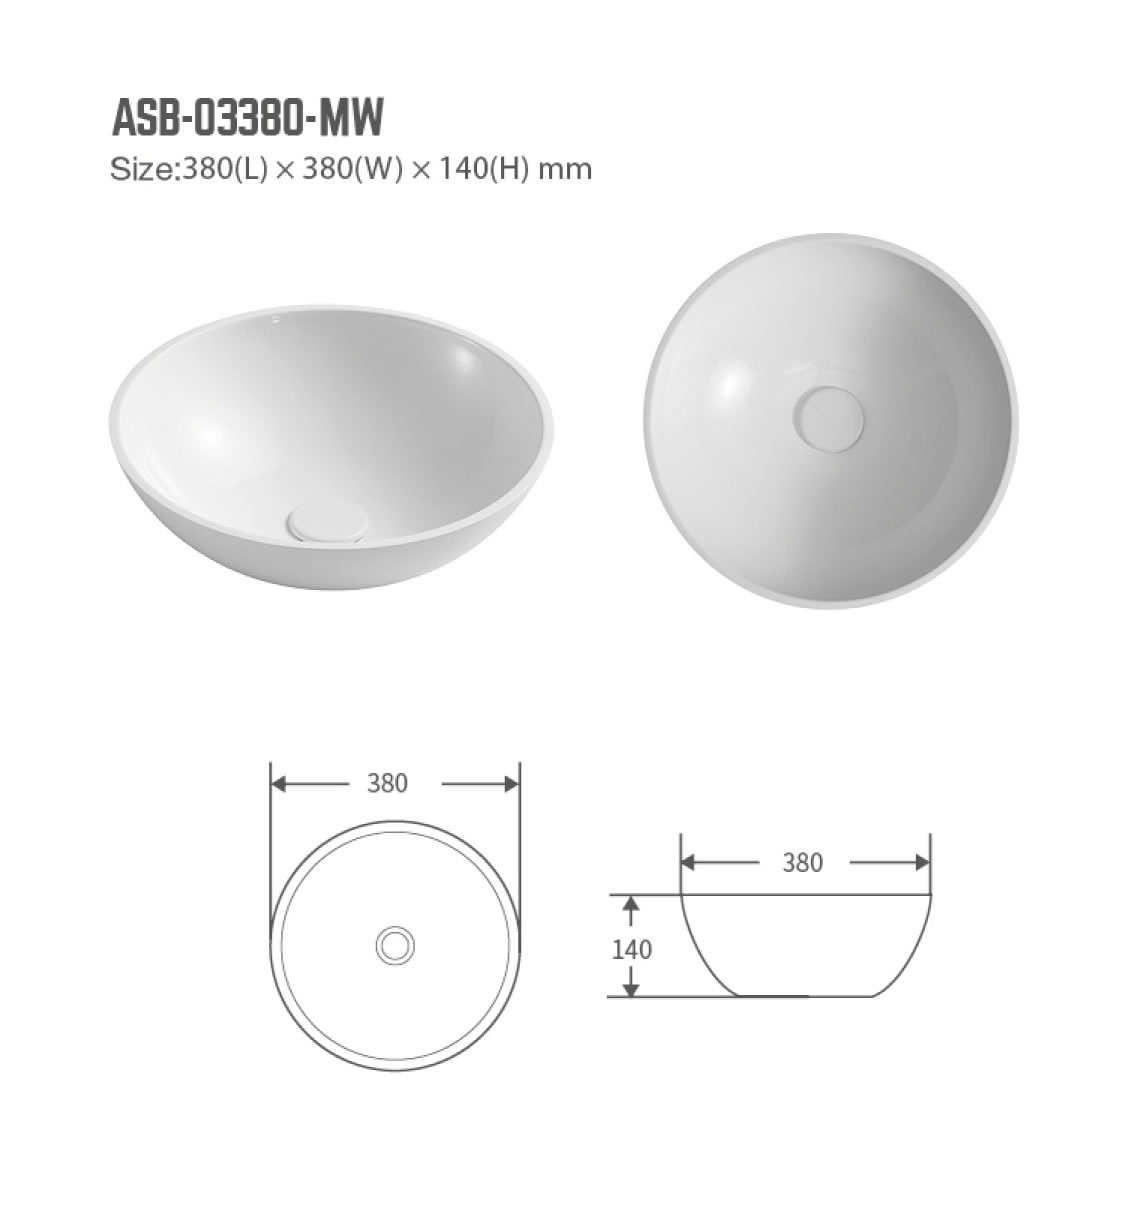 ASB-03380-MW